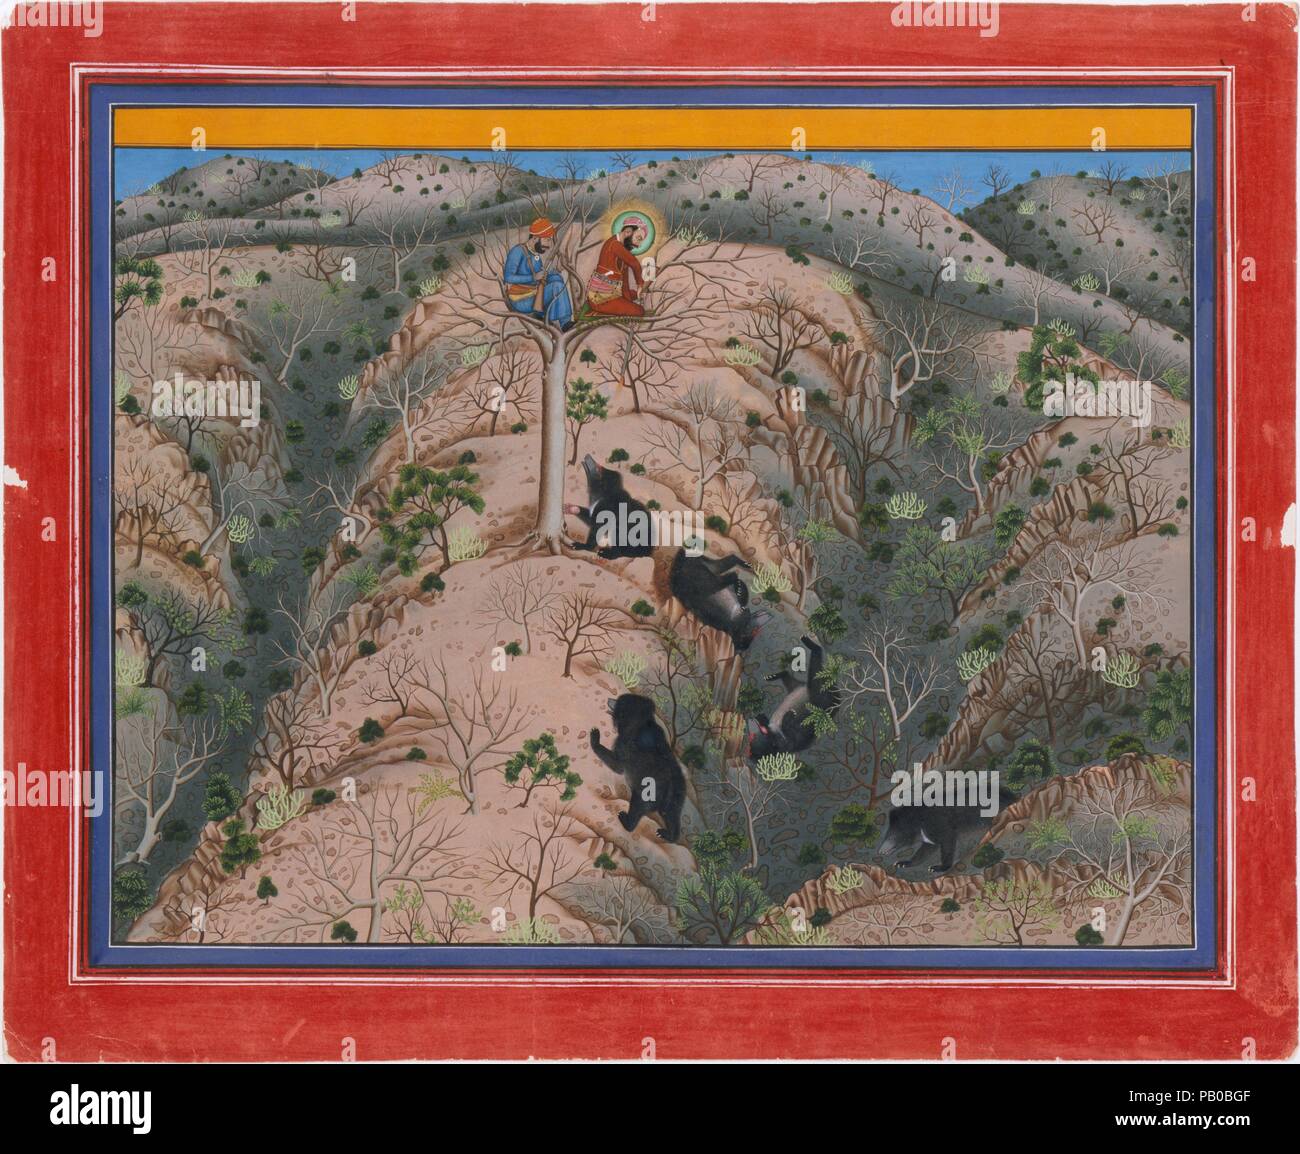 Maharaja Fateh Singh caccia orsi femmina. Artista: attribuito a Pannalai. Cultura: India Occidentale, Rajasthan, Udaipur. Dimensioni: Immagine: 13 3/8 x 18 1/4 in. (34 x 46,4 cm); pagina: 21 7/8 x 17 15/16 in. (55,6 x 45,6 cm). Data: datata 1917. La tradizione della pittura di Stato principesco di Mewar in Rajasthan, rimasta vitale anche nella prima parte del ventesimo secolo. Caccia e palazzo scene sono state ancora più popolari soggetti, ma gli artisti hanno iniziato ad impiegare più di ombreggiatura e prospettiva, probabilmente in risposta alla crescente presenza di fotografia alla corte. Numerose scene di caccia sono stati dolore Foto Stock